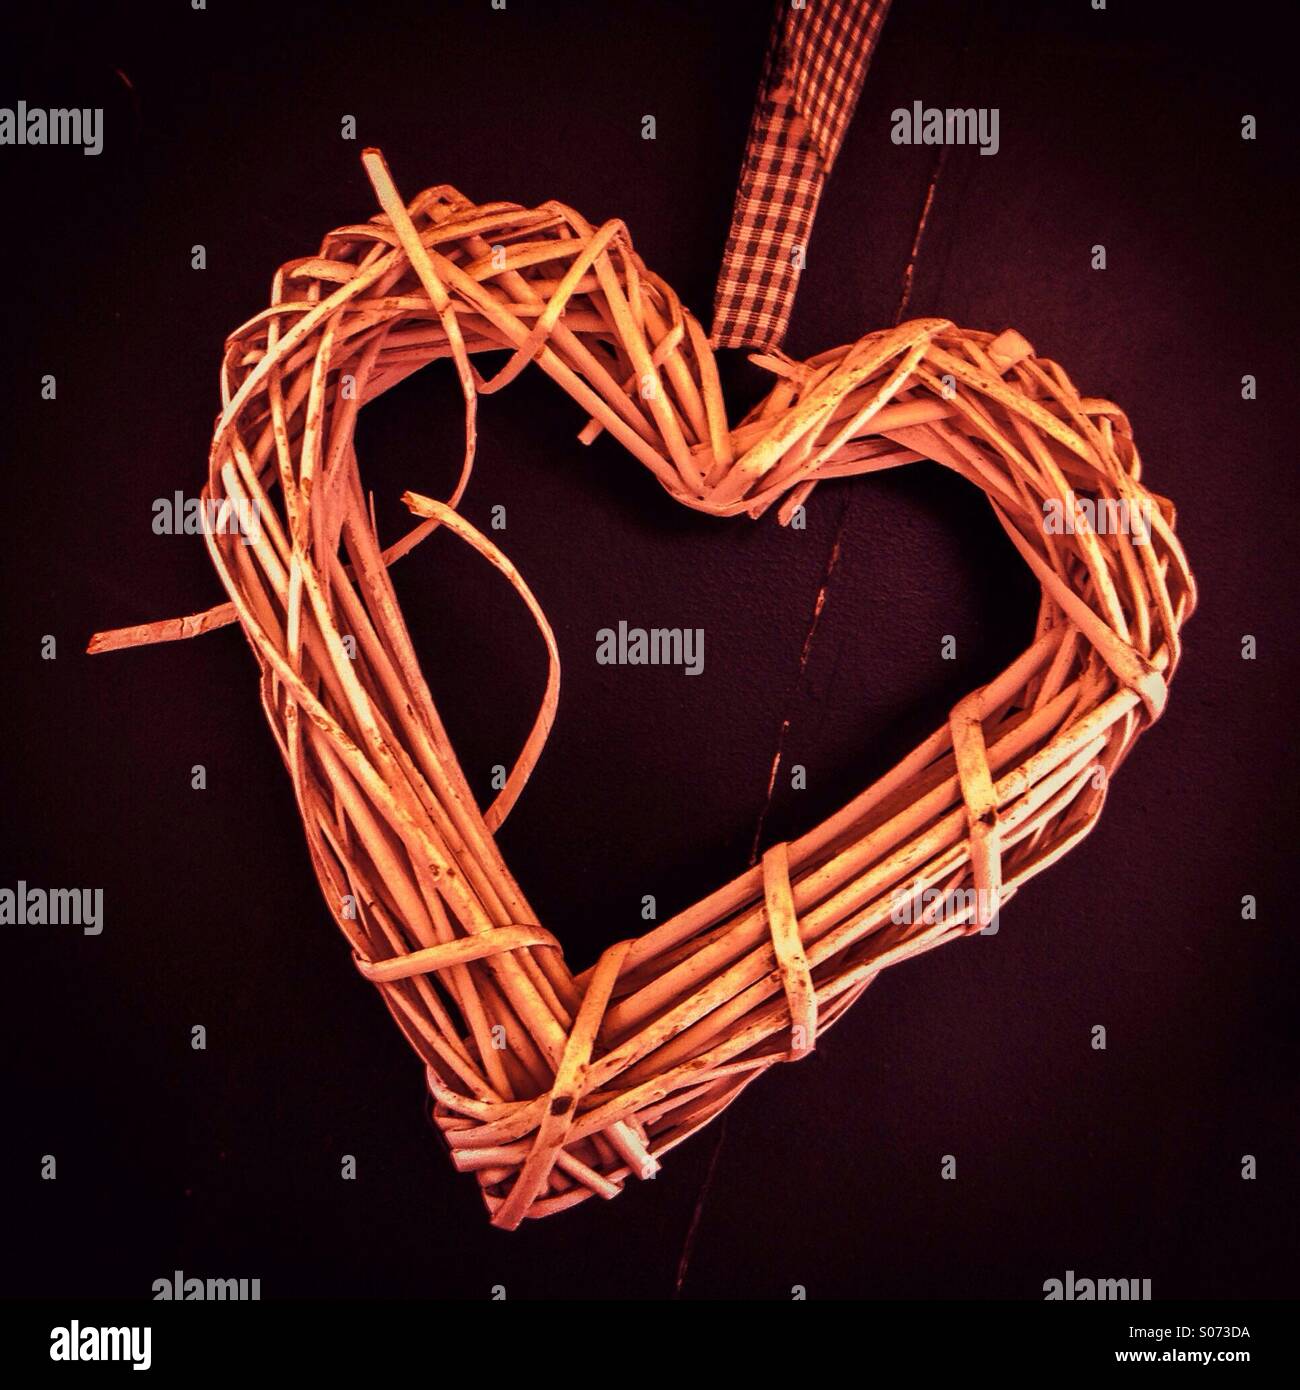 Handmade heart valentines hanging Stock Photo